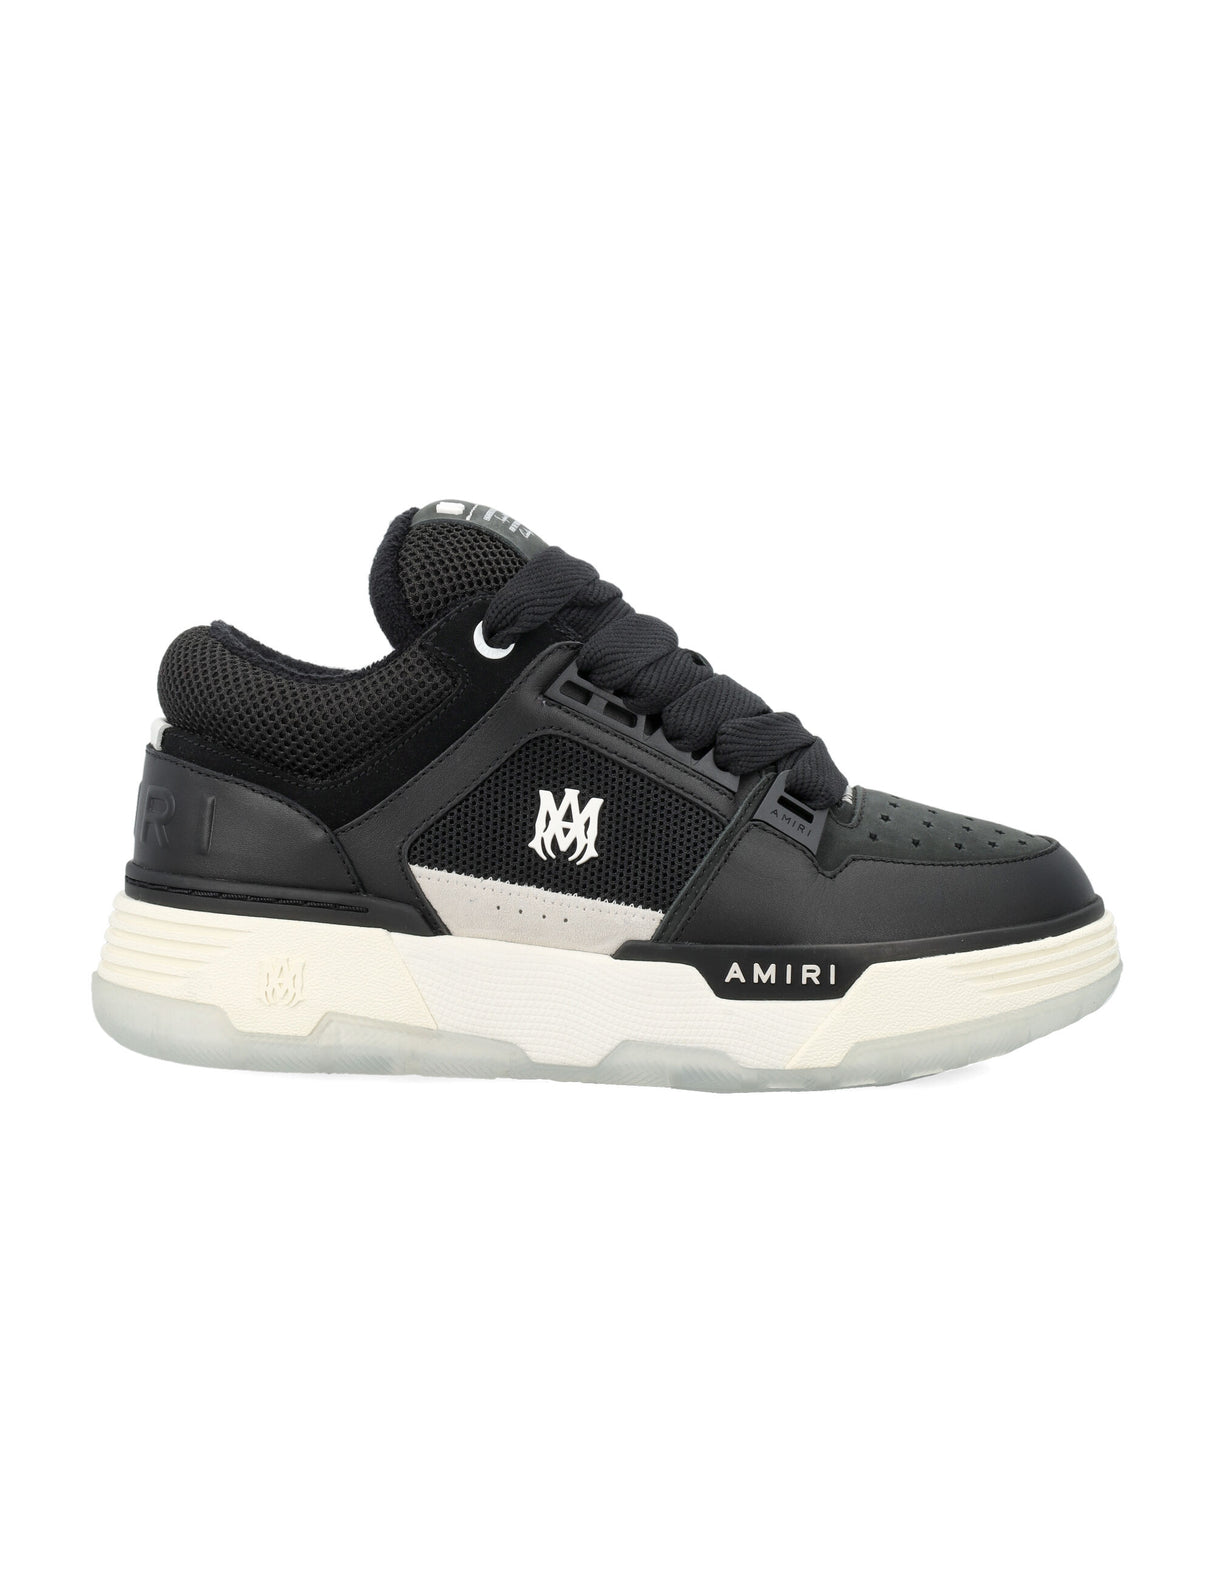 AMIRI Men's Low-Top MA-1 Sneakers - Black